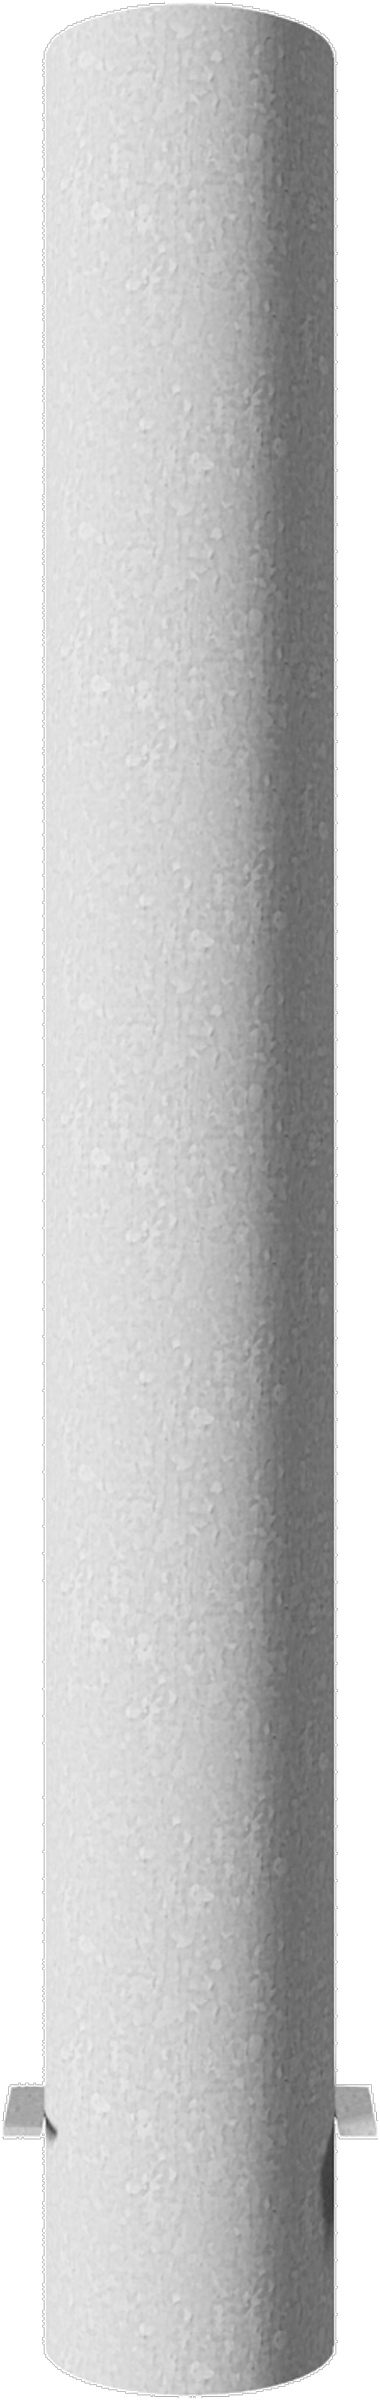 Stahlrohrpoller Ø 152 x 3,2 mm ortsfest weiß zum Einbetonieren feuerverzinkt